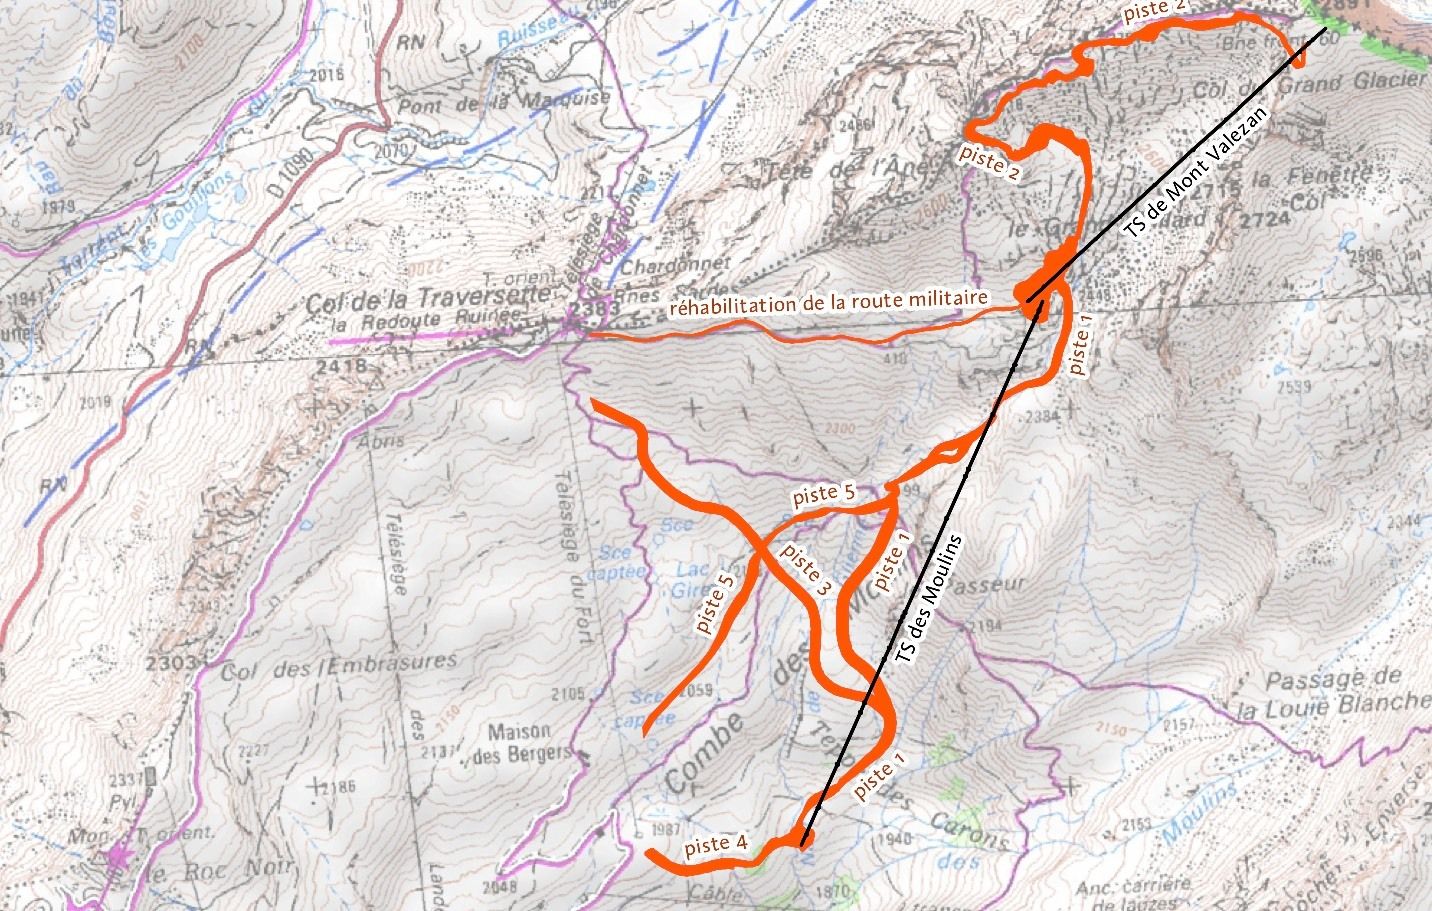 De schets met pistes die het skigebied heeft gebruikt bij het aanvragen van vergunningen